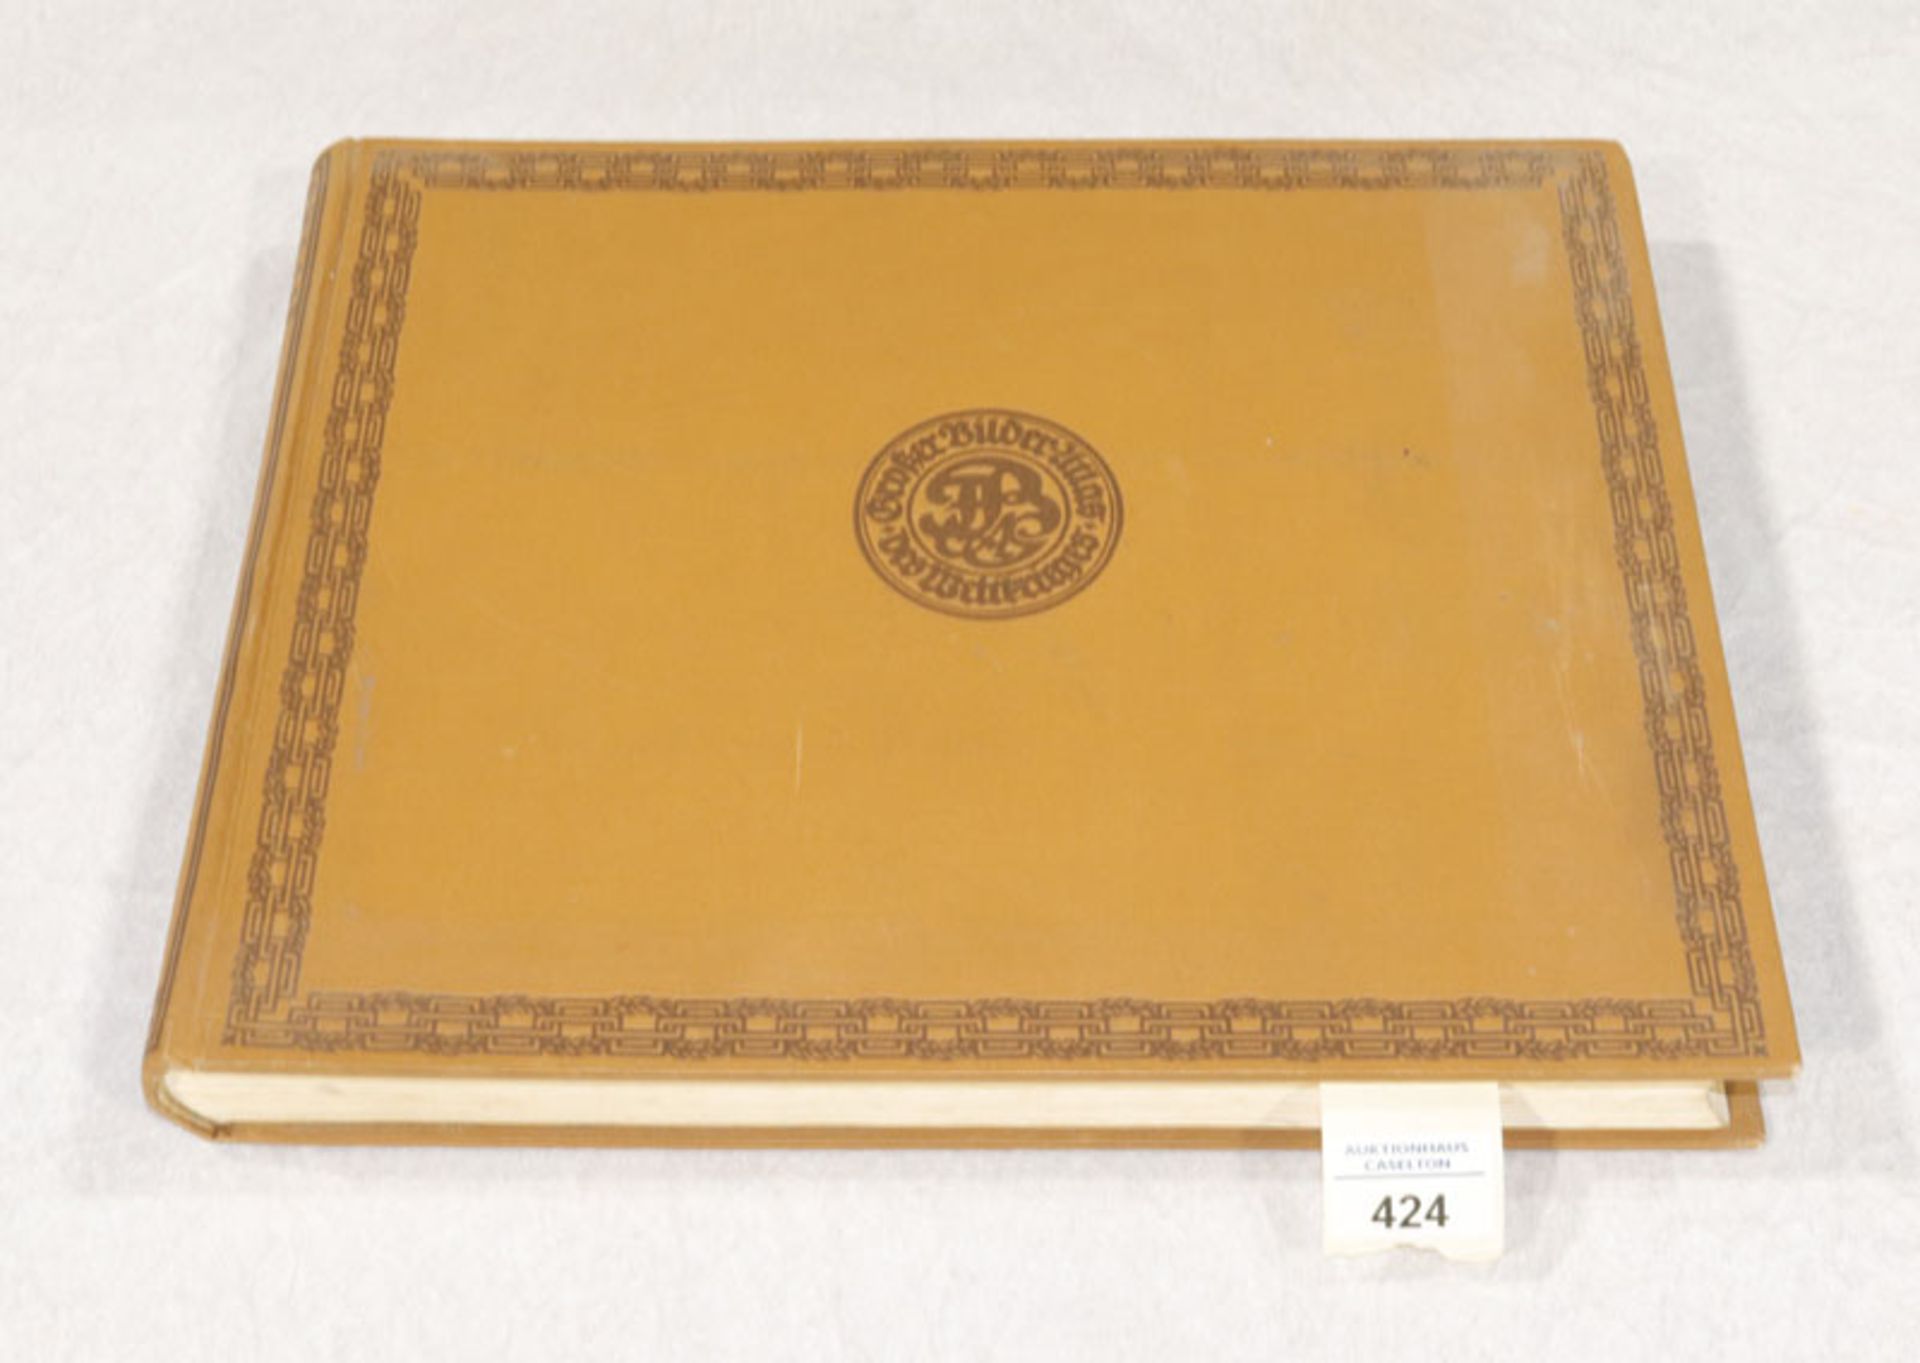 Großer Bilderatlas des Weltkrieges, 2. Band, mit 1850 Abbildungen, Verlag von F. Bruckmann,